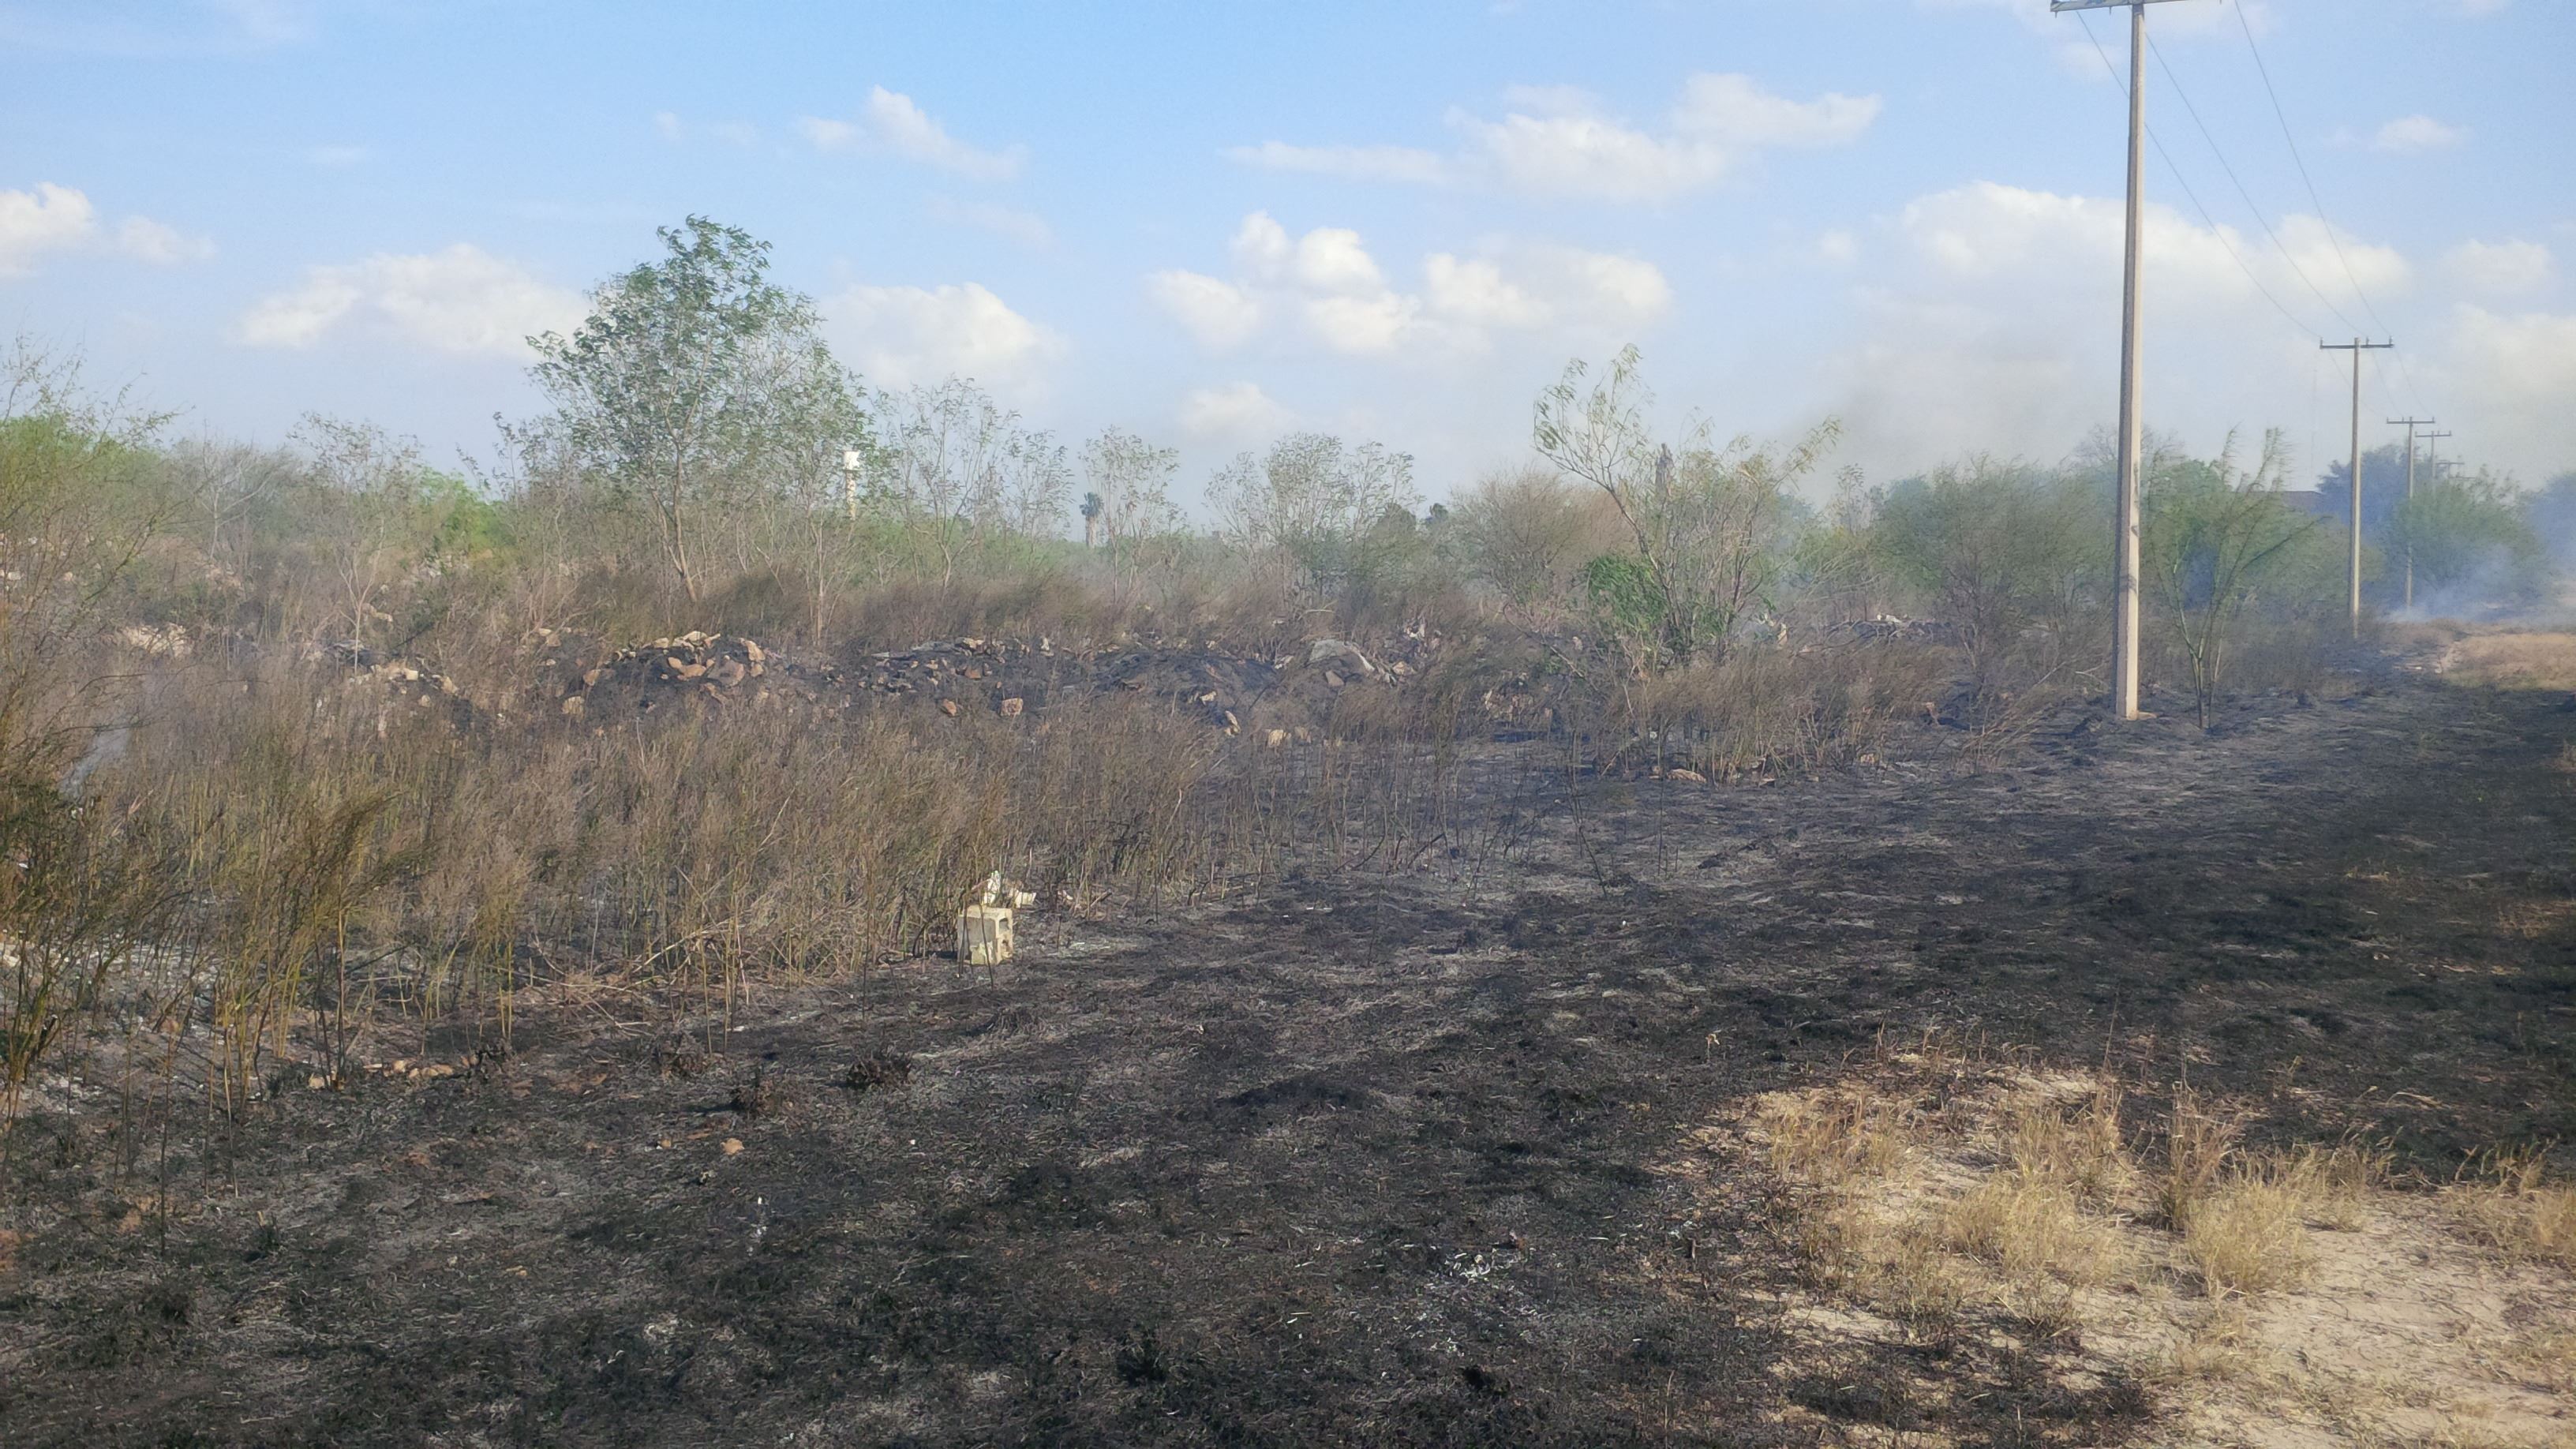 EXTENSION. Cerca de una hectárea de terreno baldío enmontado, fue arrasado por un incendio forestal registrado la tarde del martes a espaldas de la colonia Infonavit del Norte.(foto: Heriberto Rodríguez)